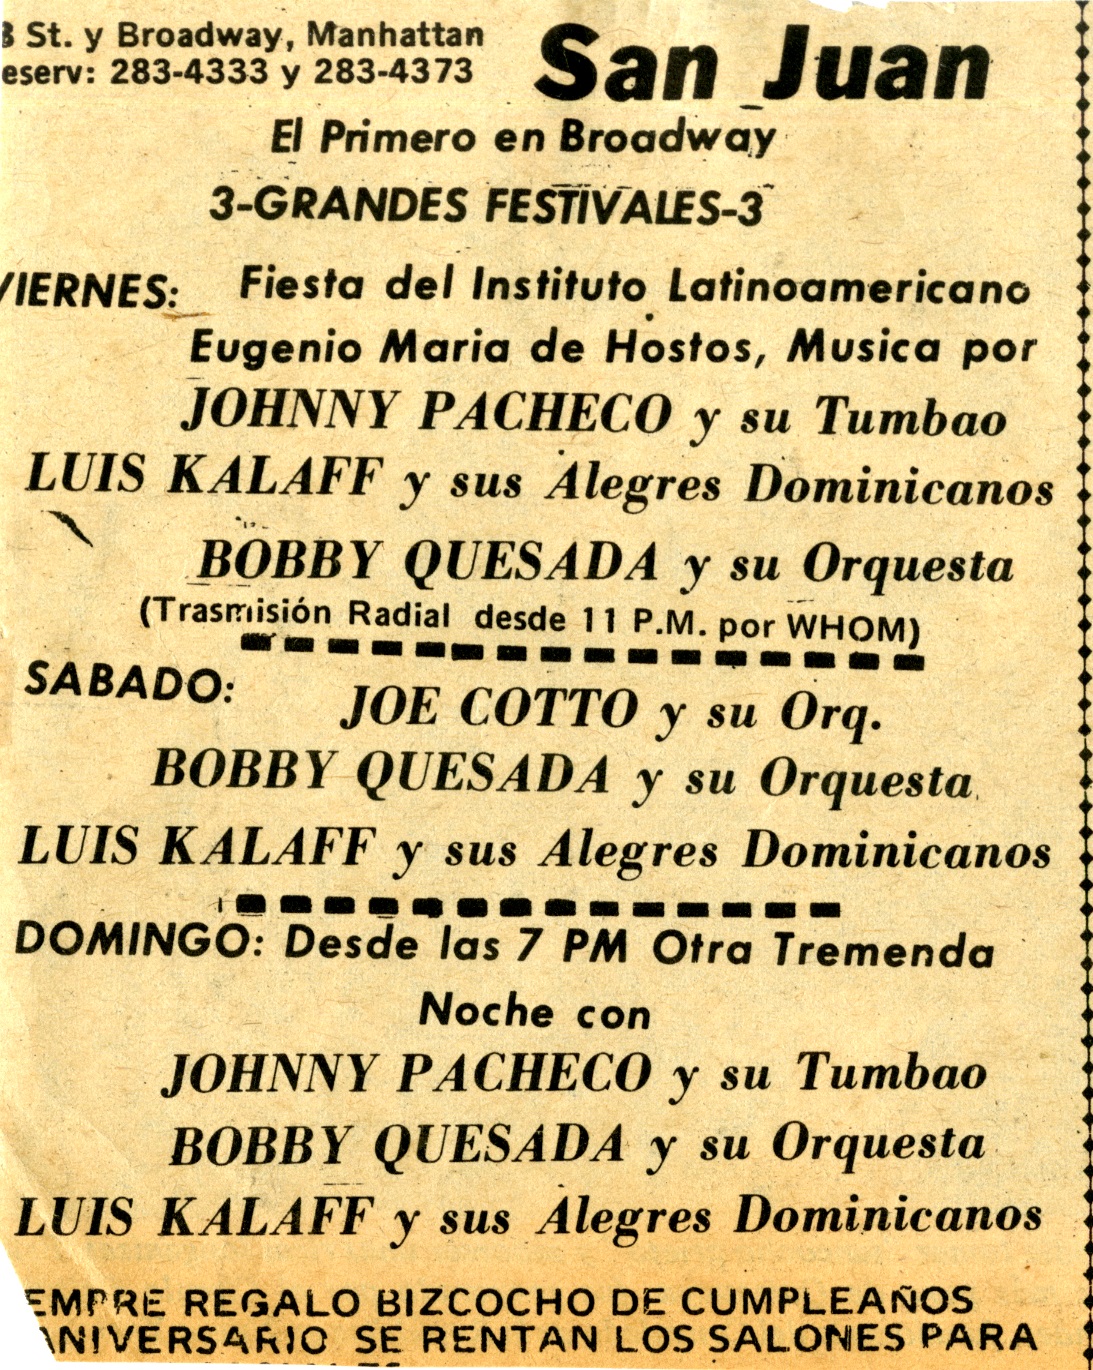 San Juan Theater Advertisement, circa 1968